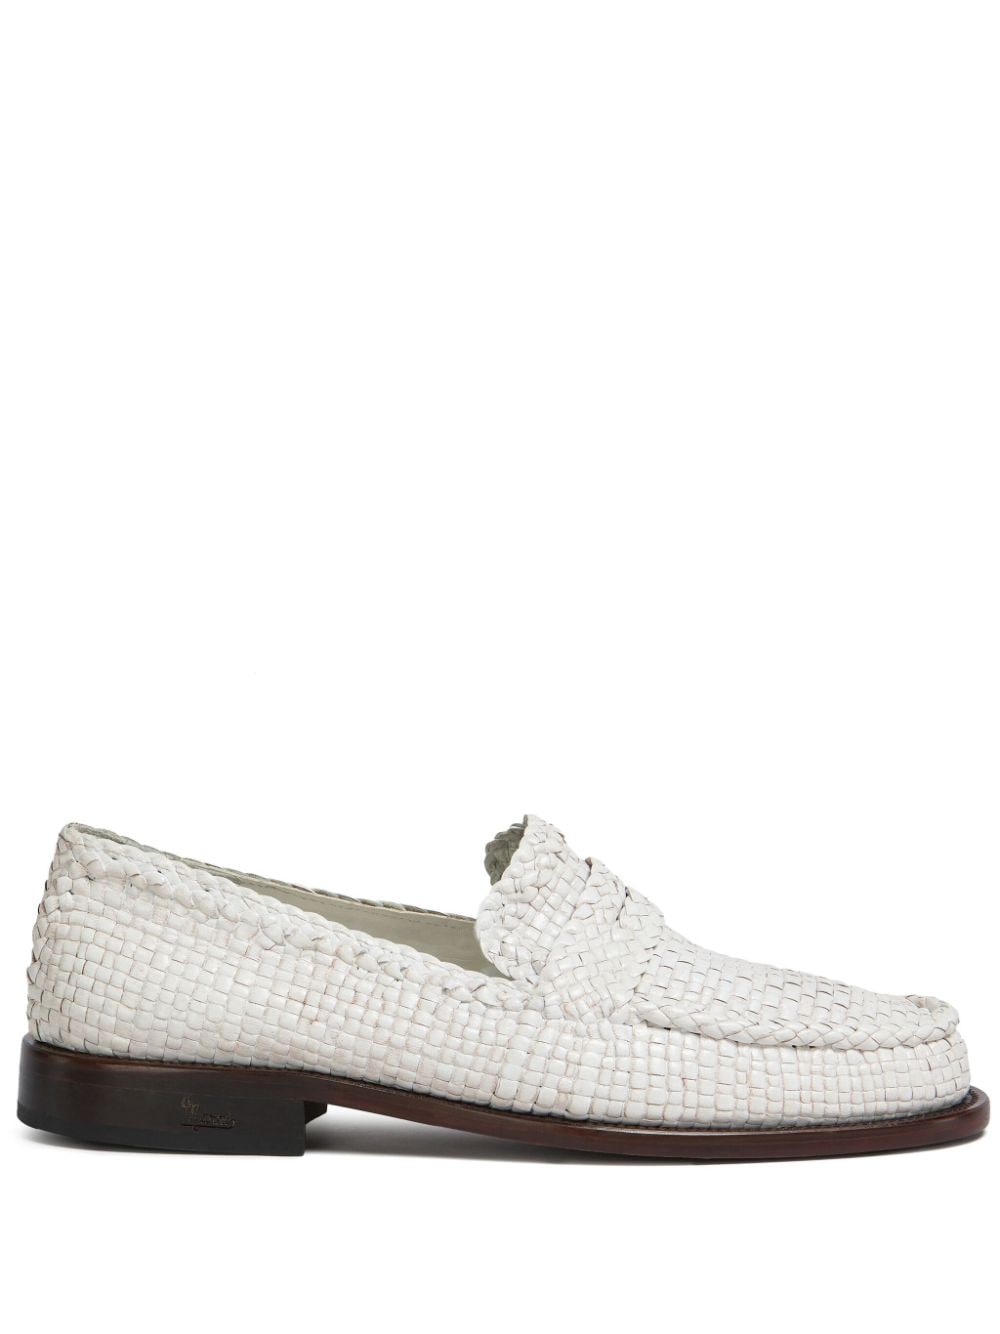 Marni interwoven-design leather loafers - White von Marni